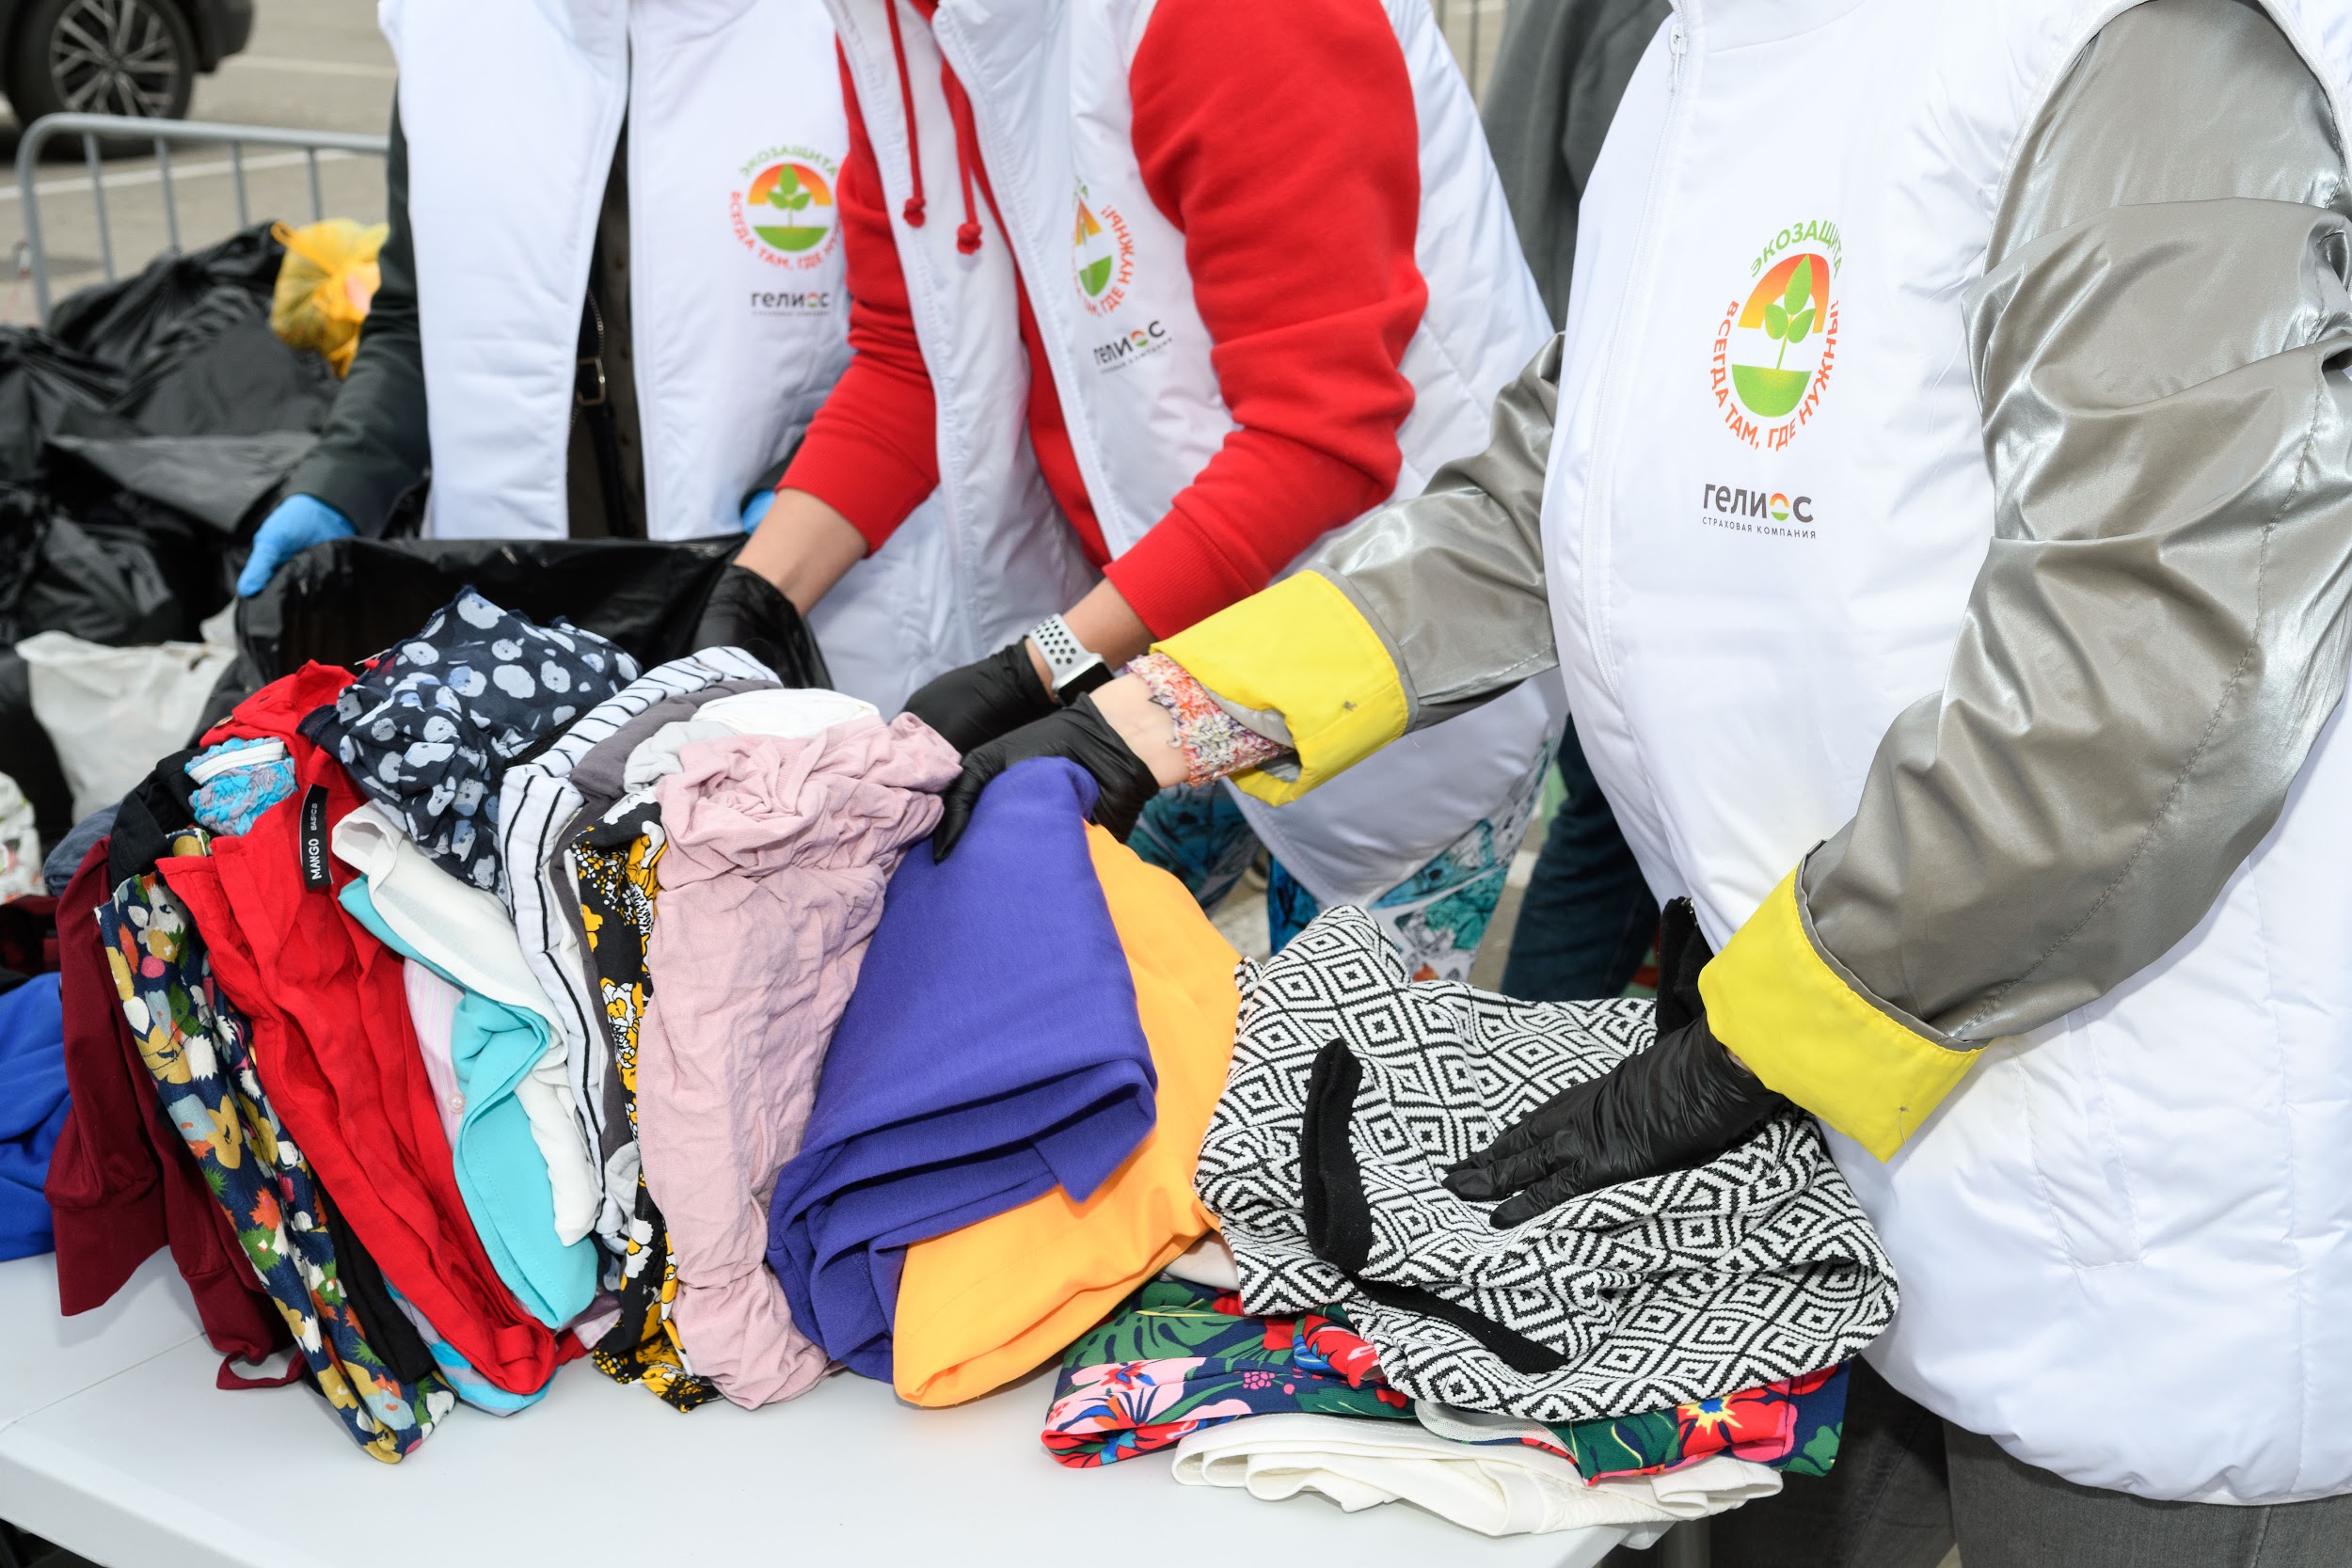 Акция «Дай одежде вторую жизнь» состоялась в Нижнем Новгороде при поддержке Страховой Компании «Гелиос»